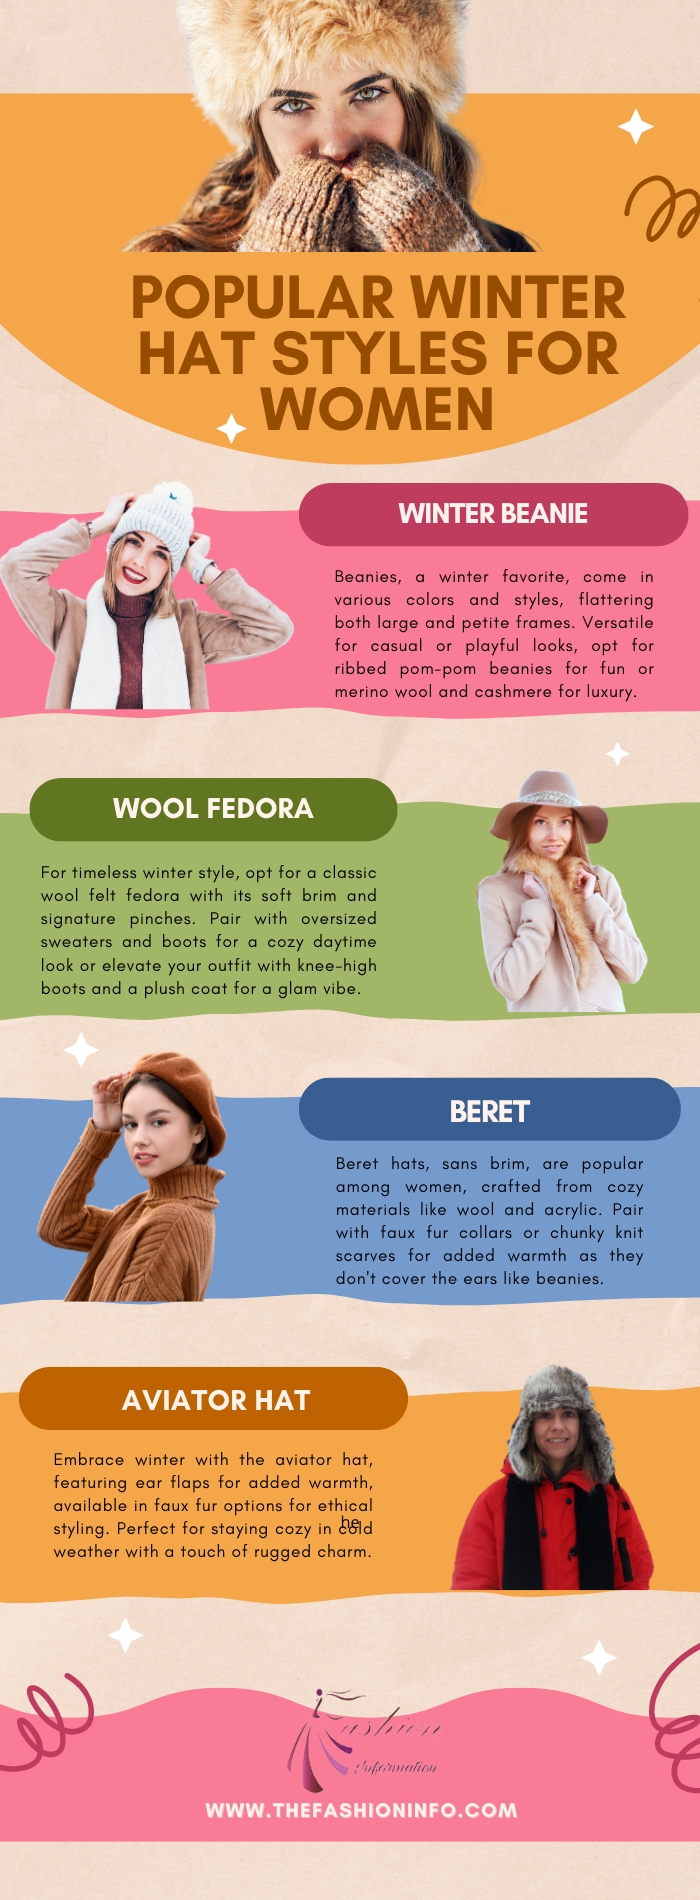 Popular winter hat styles for women